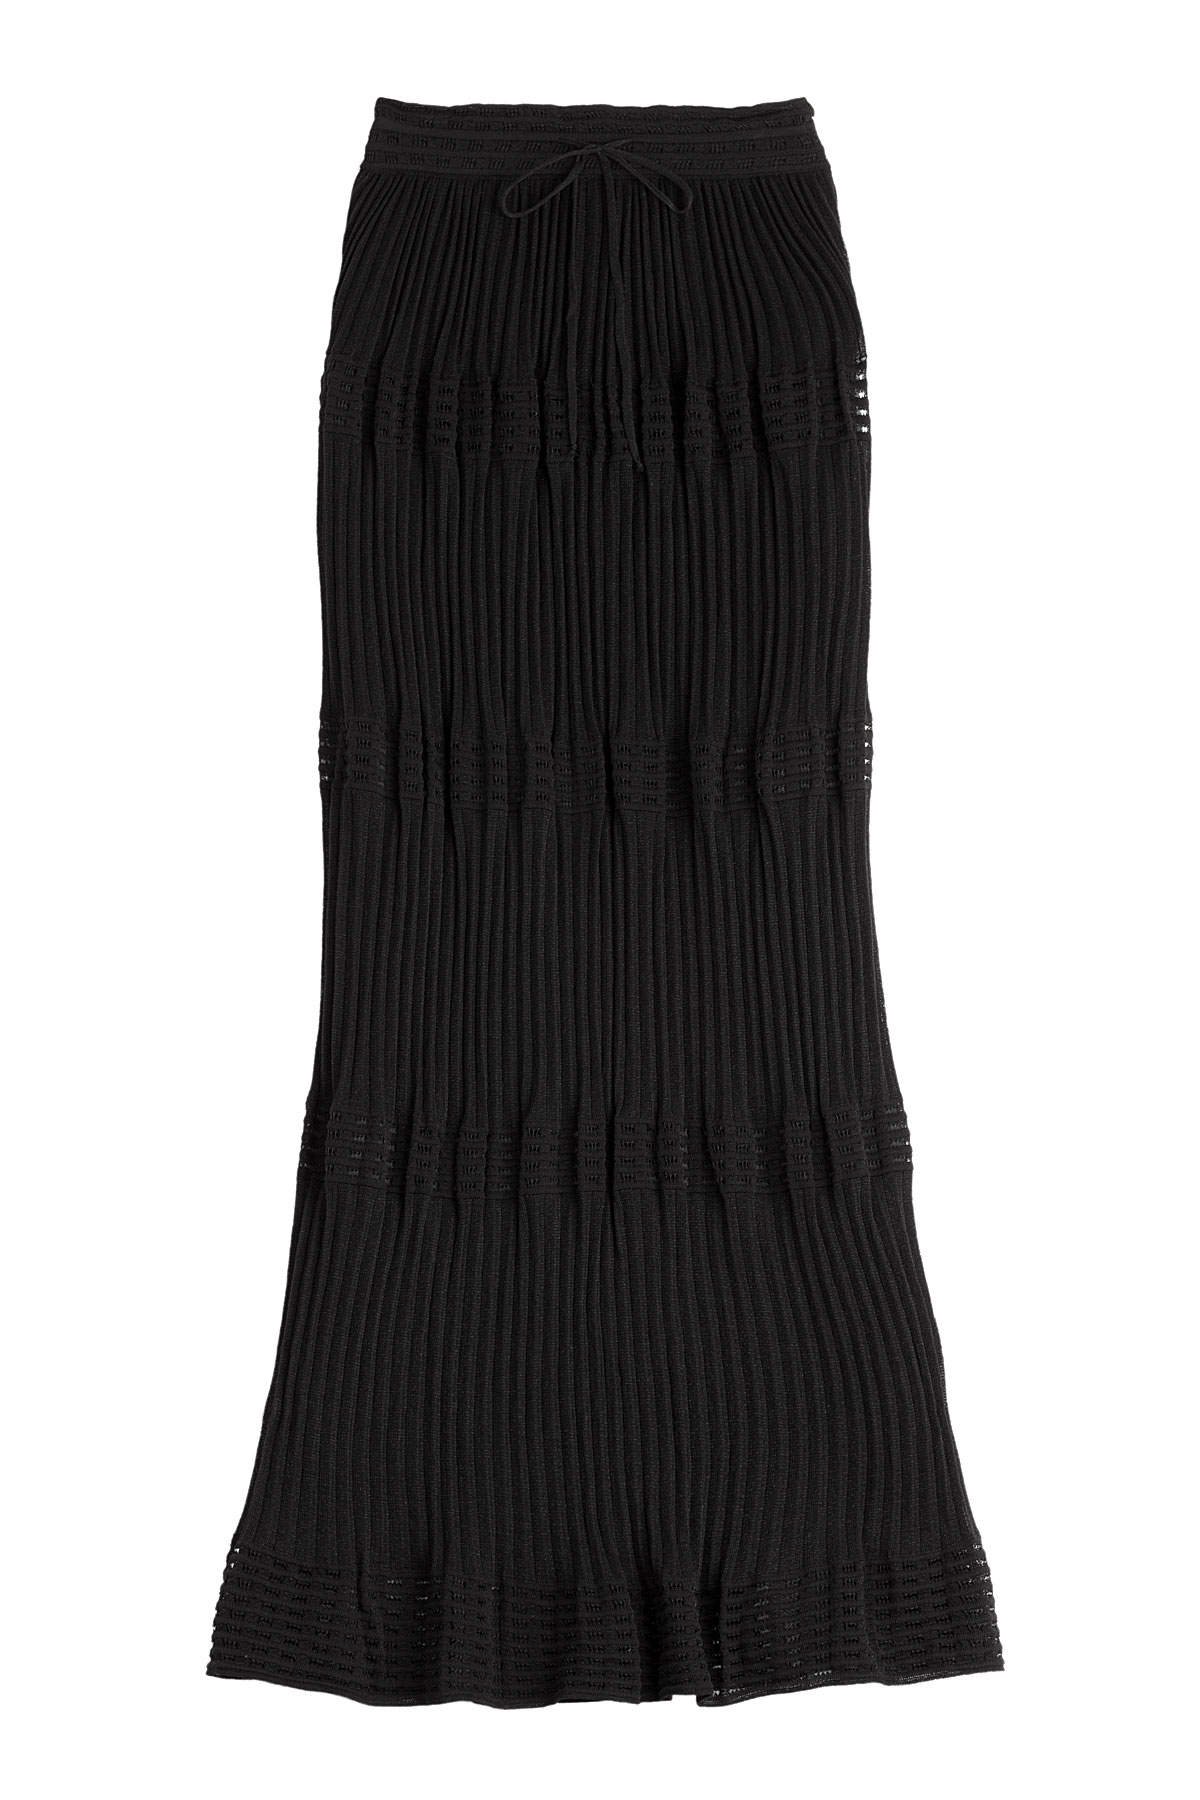 Lyst - M Missoni Stretch Knit Maxi Skirt - Black in Black